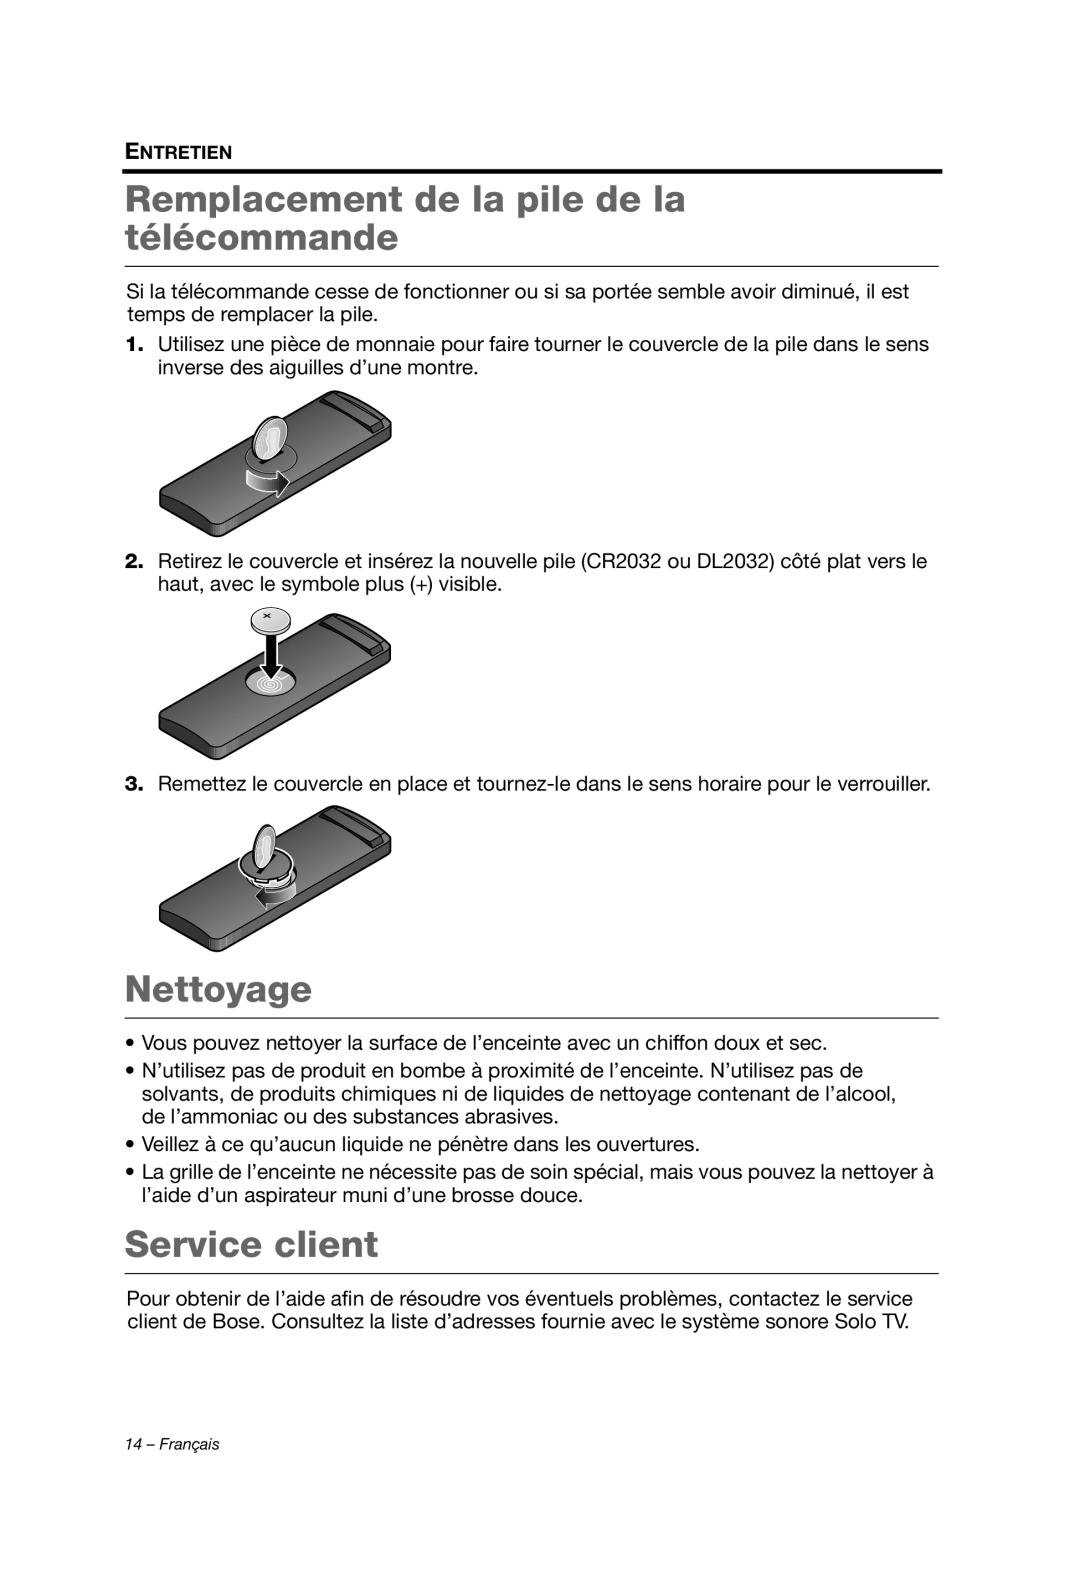 Bose AM353759 manual Remplacement de la pile de la télécommande, Nettoyage, Service client, Entretien 